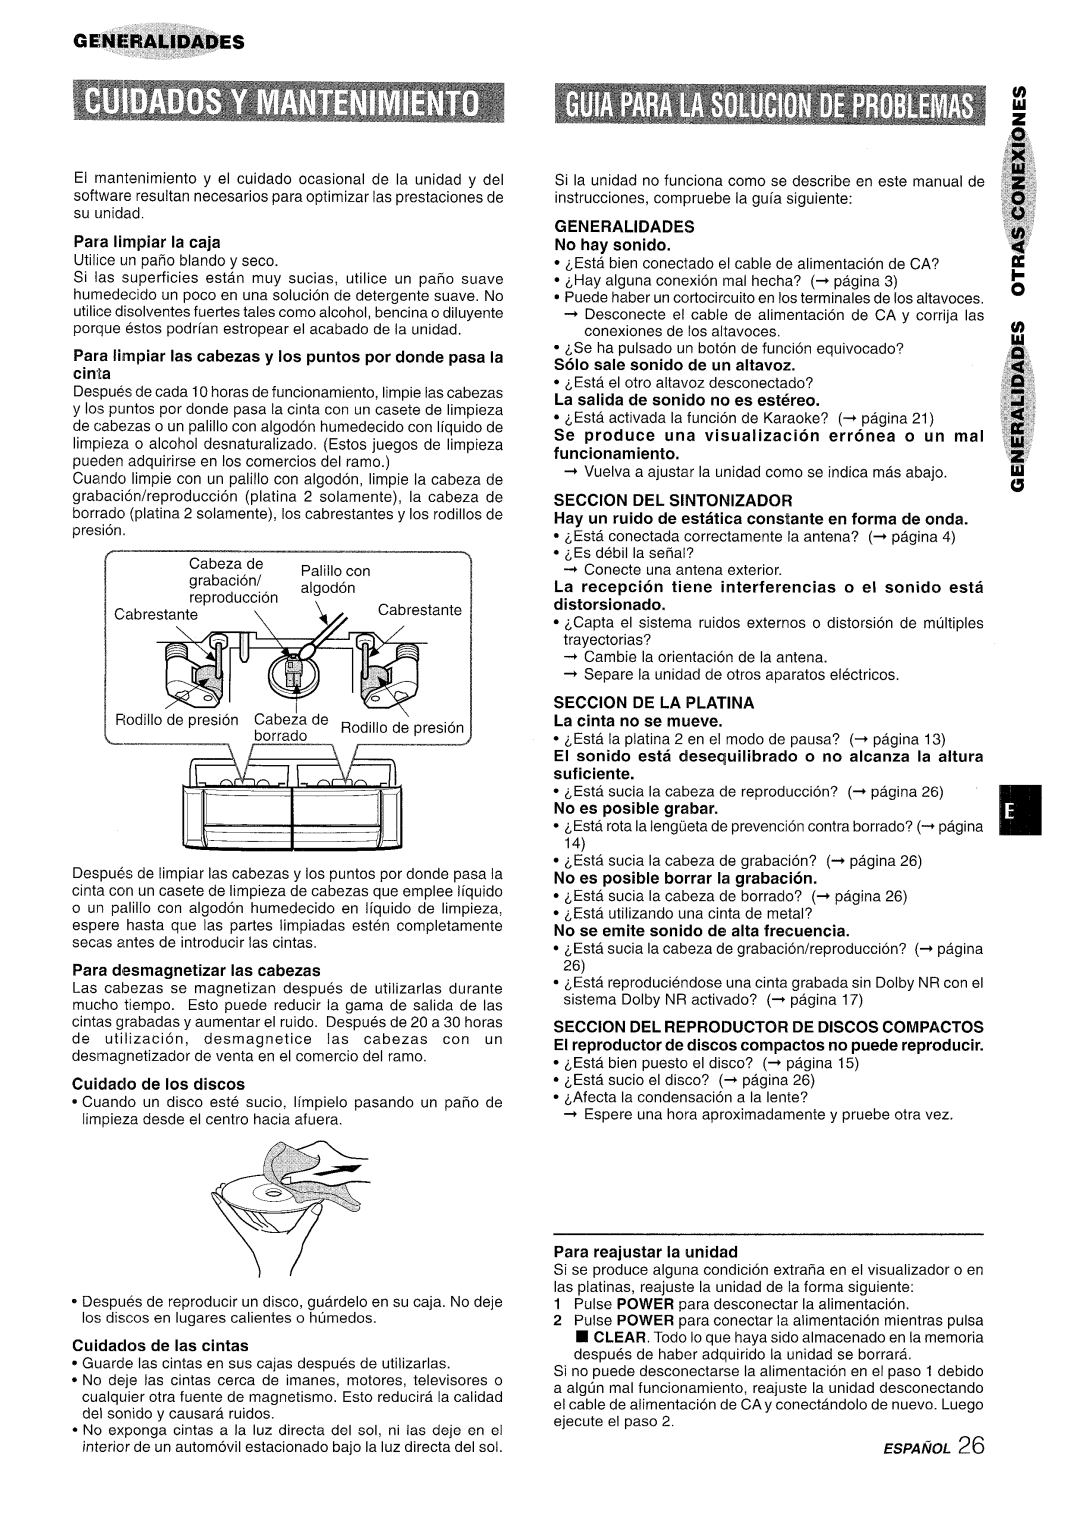 Aiwa NSX-A909 Seccion De La Platina, Para Iimpiar Ias cabezas y Ios puntos por donde pasa la cinta, Cuidado de Ios discos 